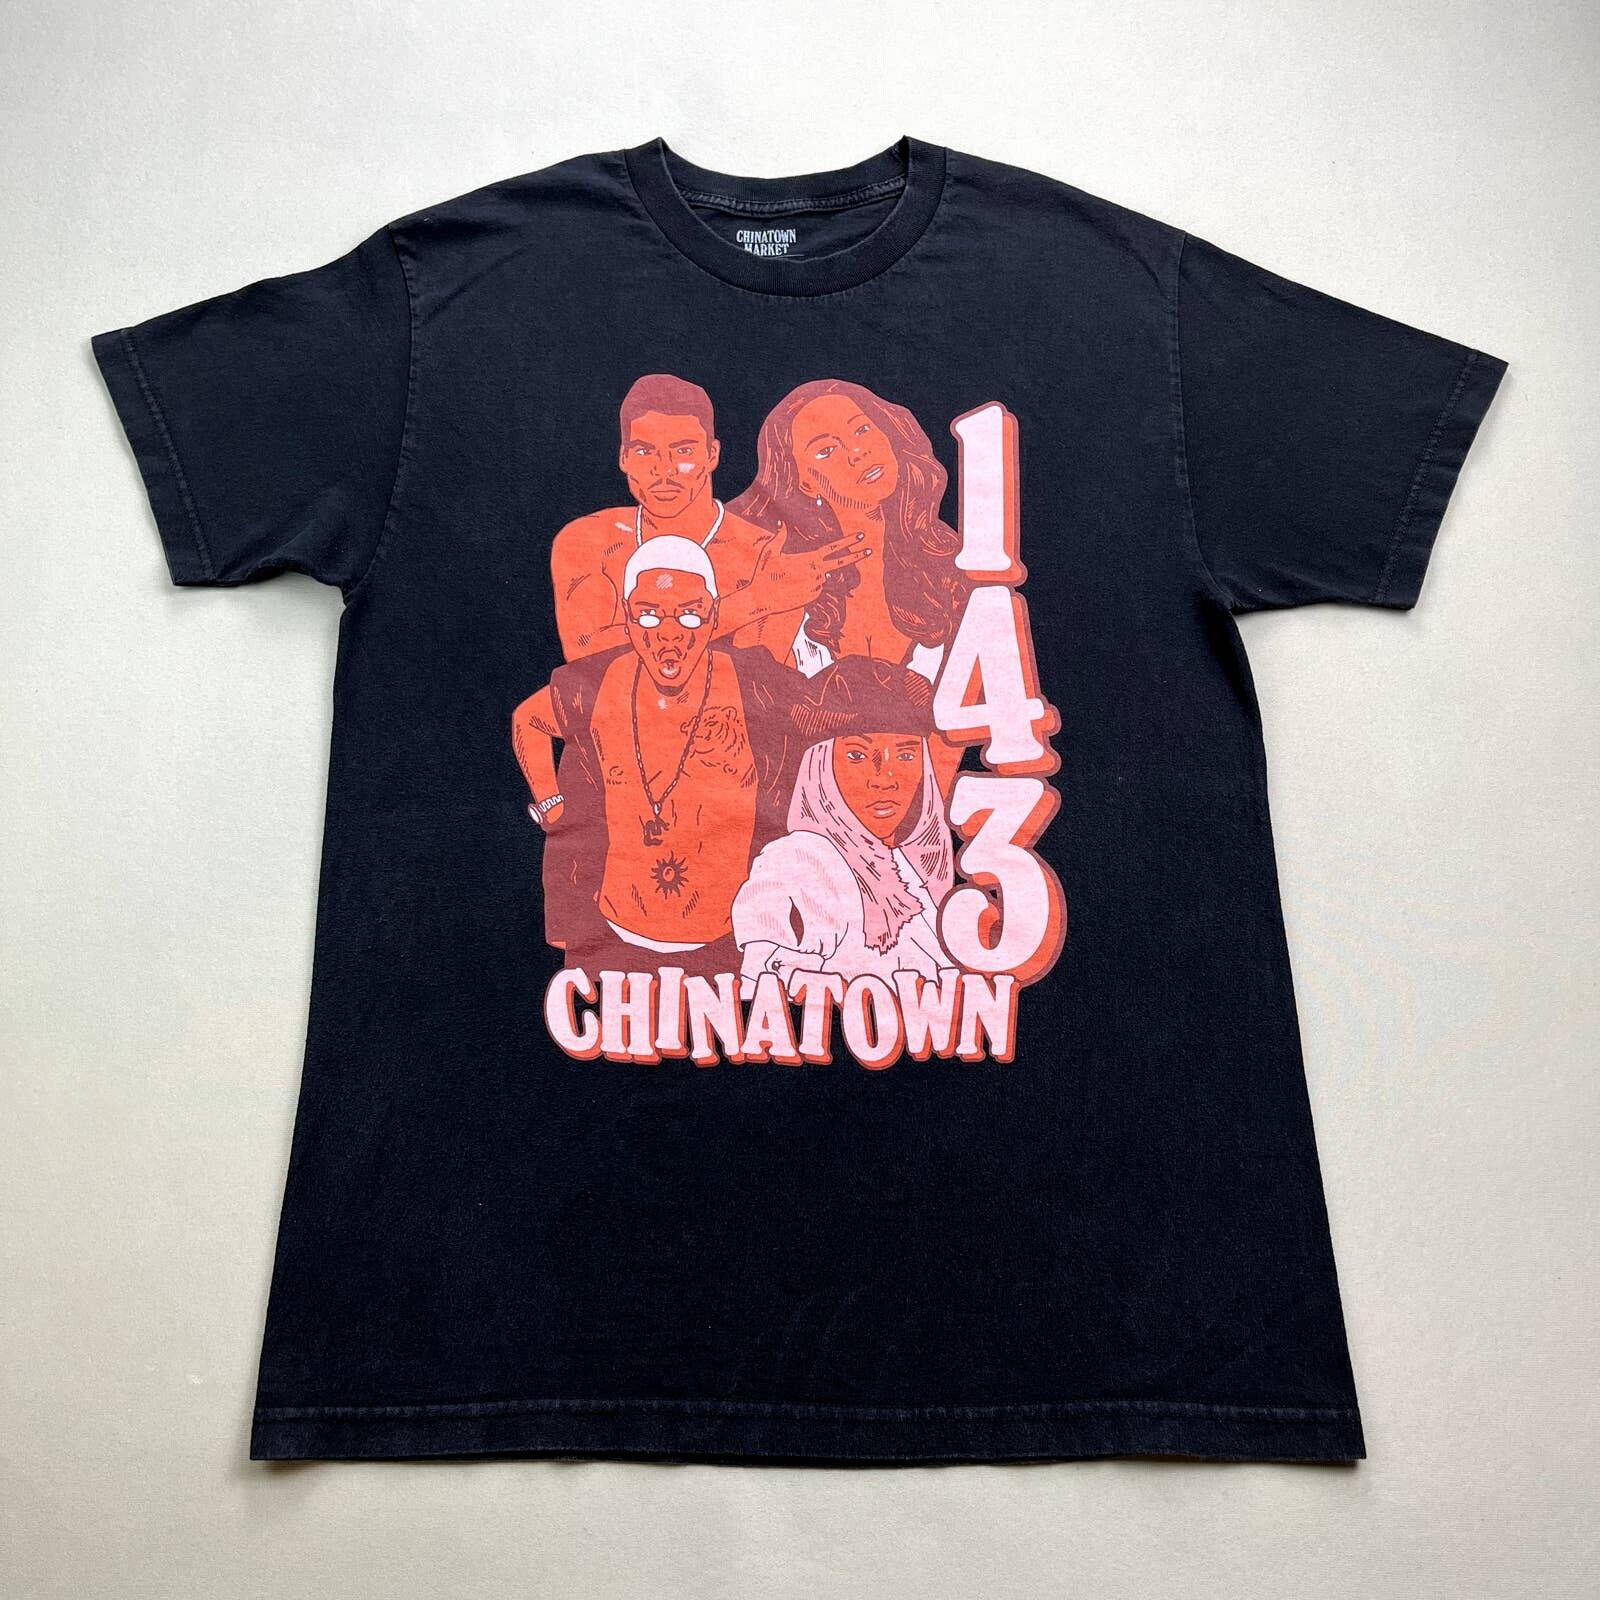 Market Chinatown Market T-Shirt Large Black 143 Artists Hip Hop Size US L / EU 52-54 / 3 - 1 Preview